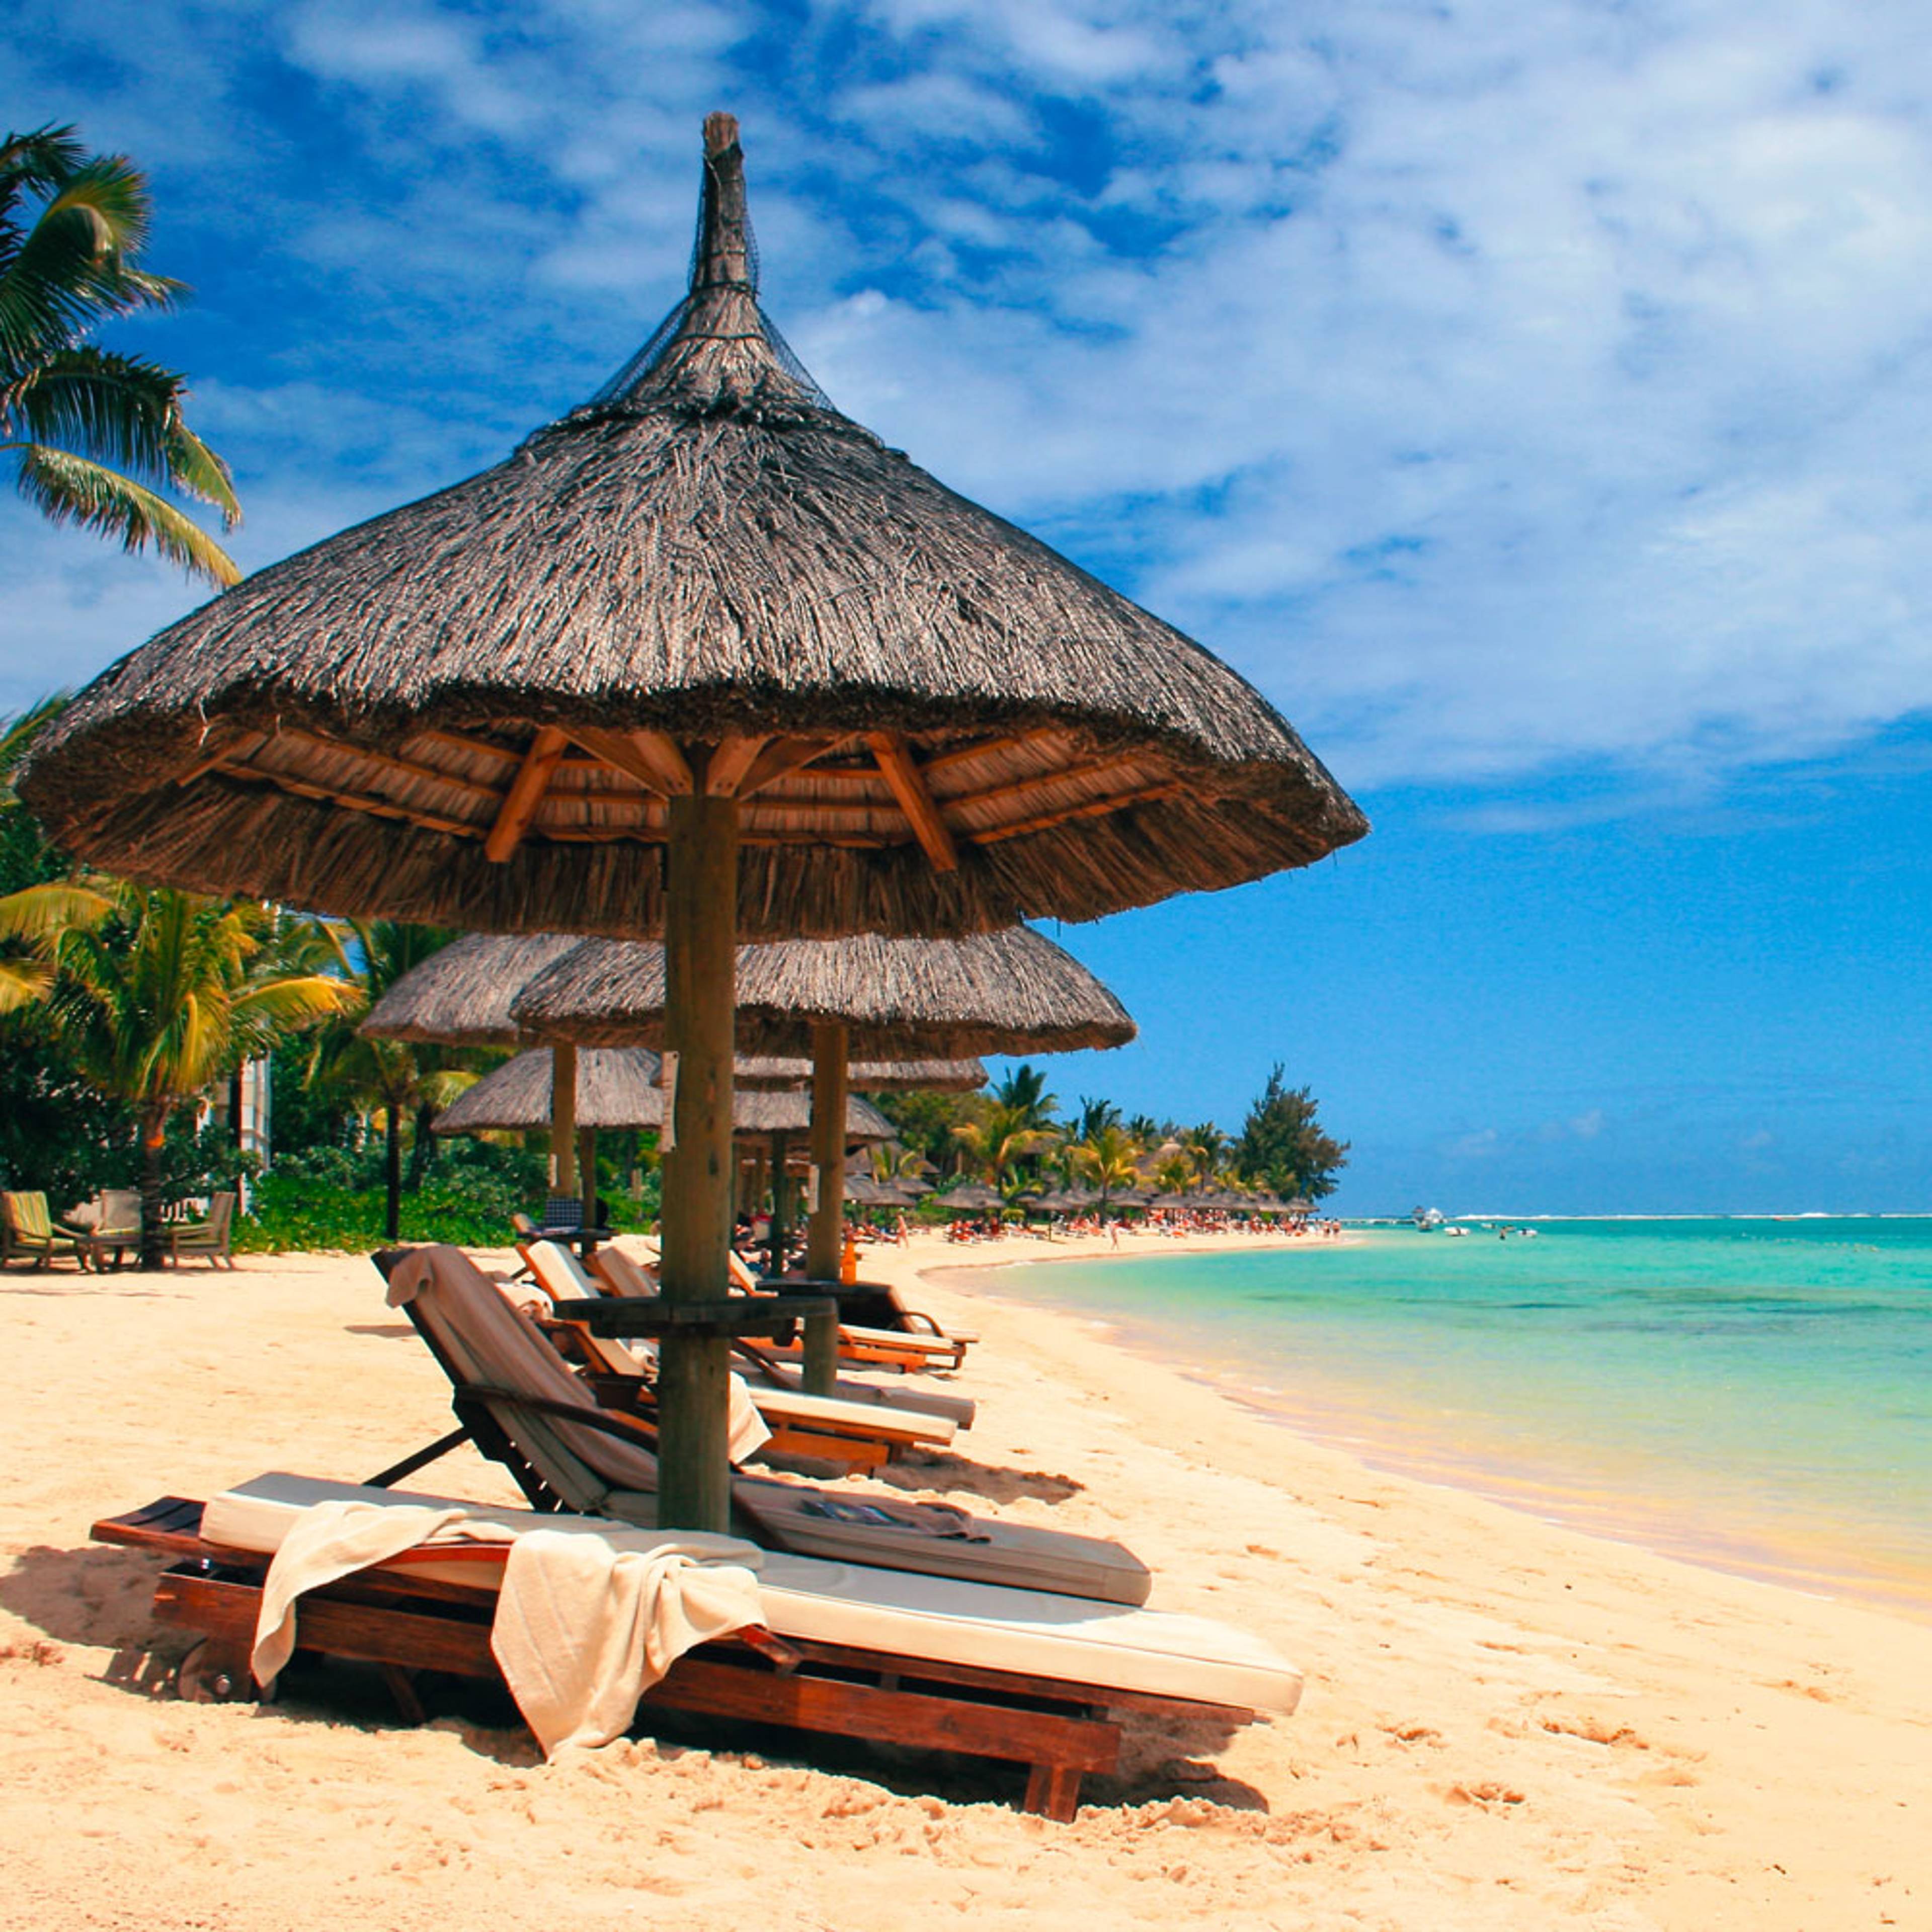 Le tue vacanze al mare a Mauritius su misura